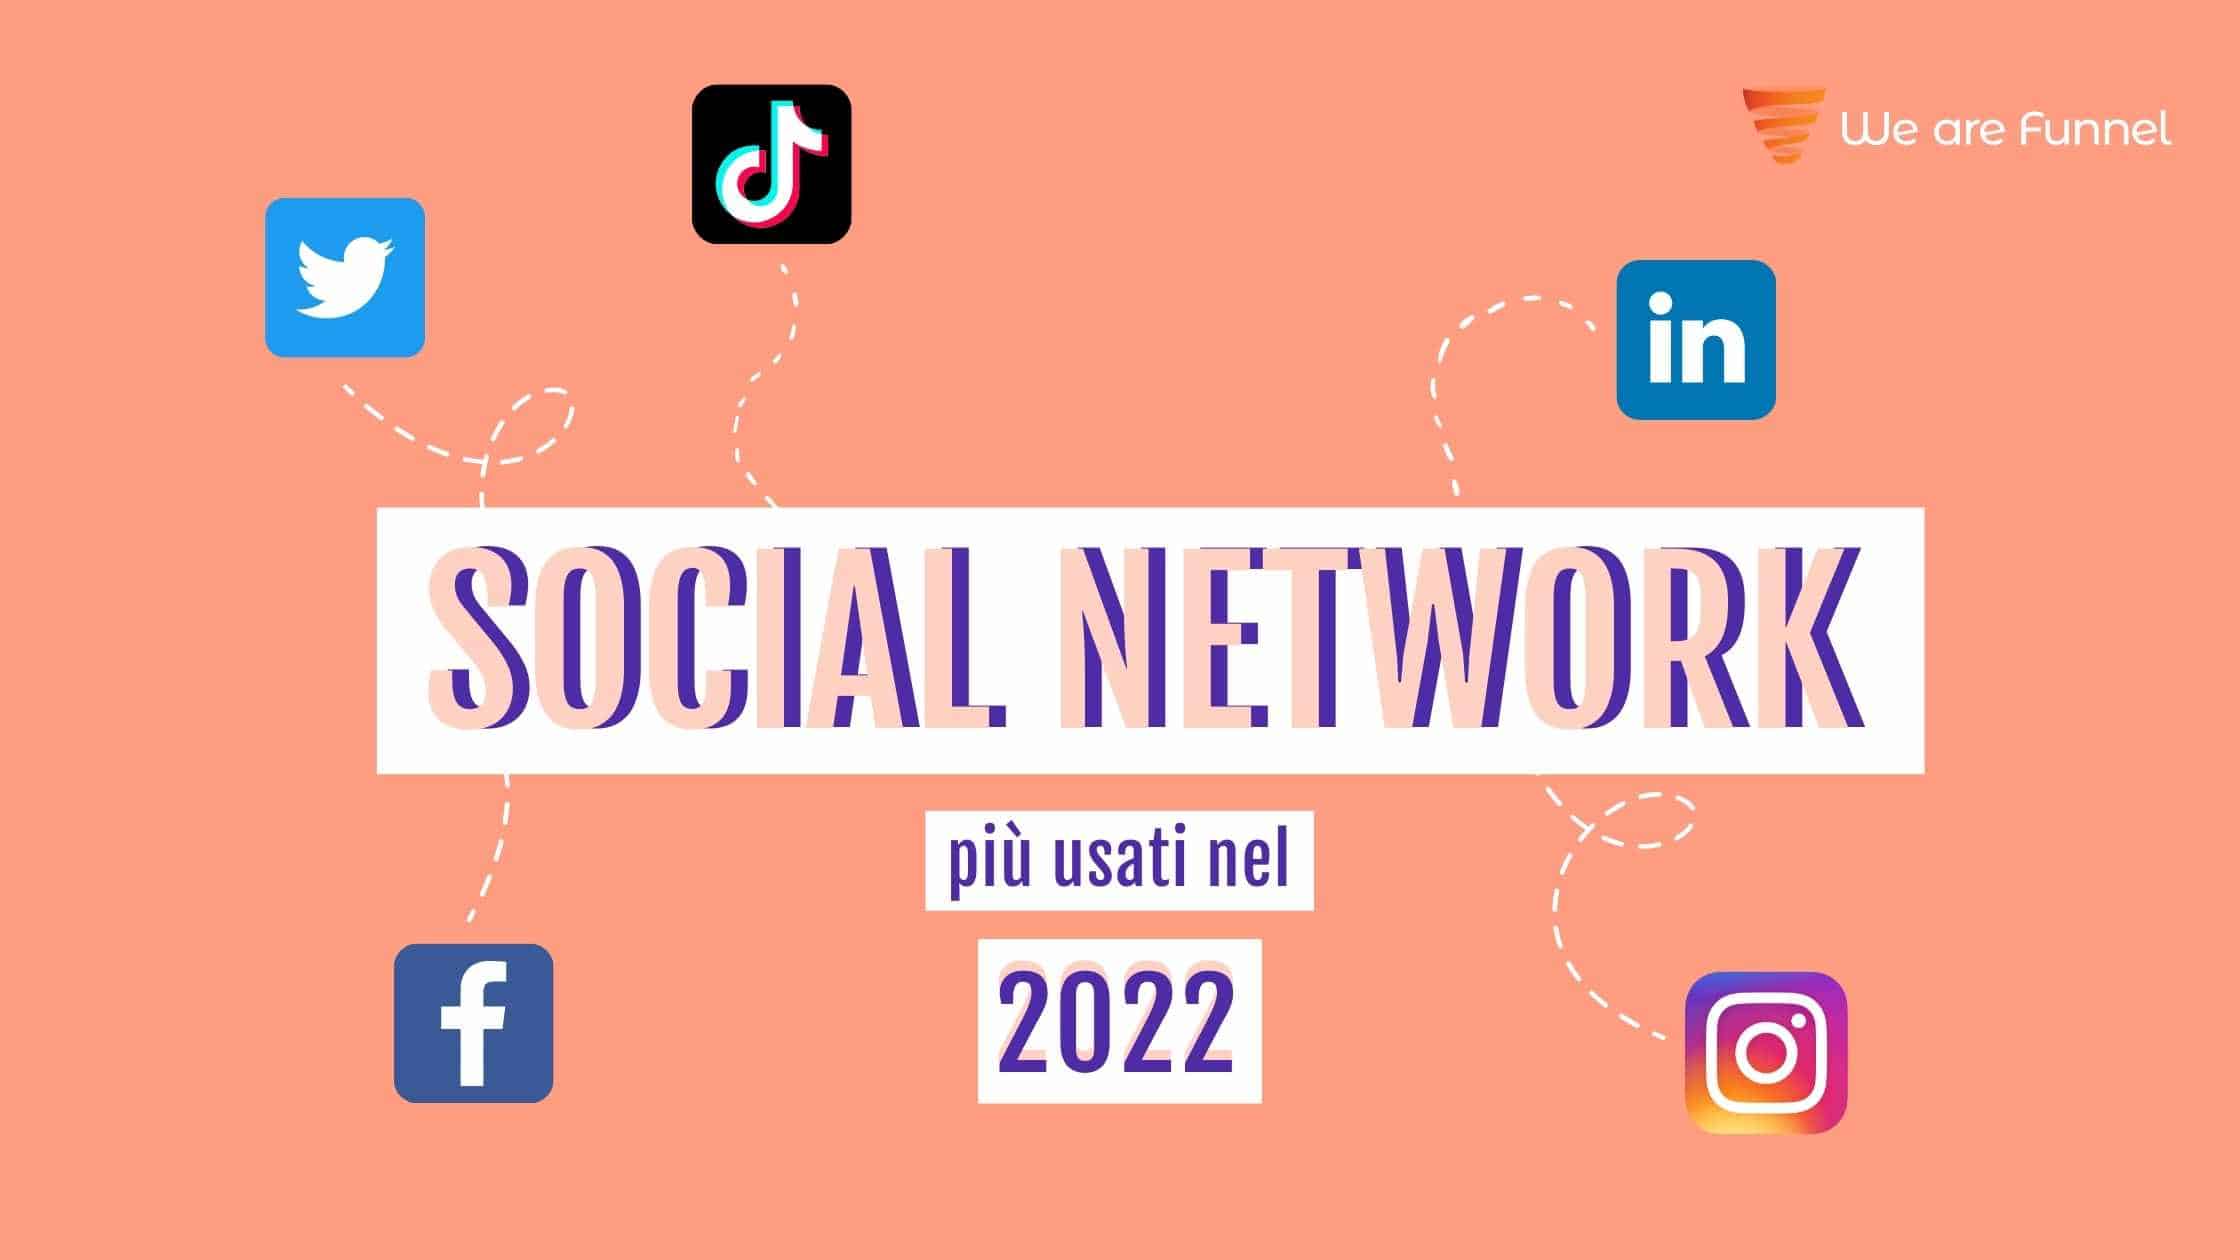 Social Network più usati nel 2022